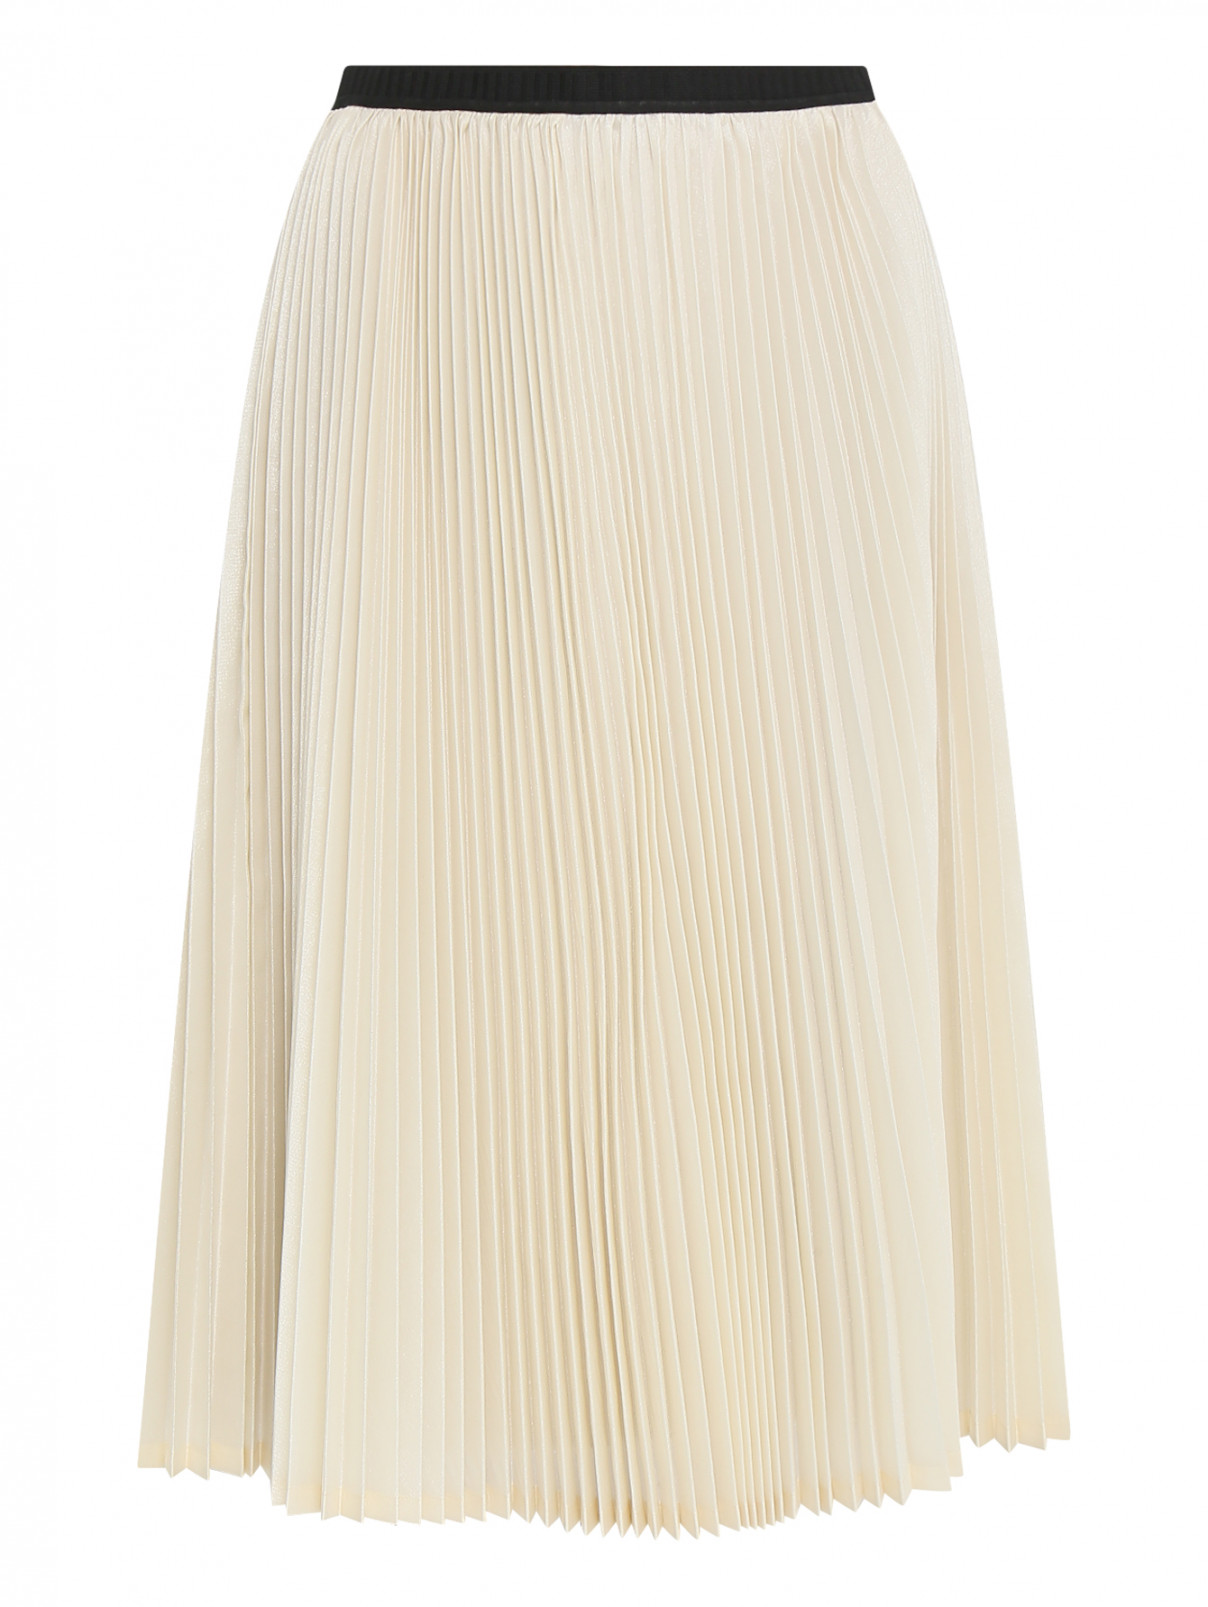 Плиссированная юбка Antonio Marras  –  Общий вид  – Цвет:  Бежевый